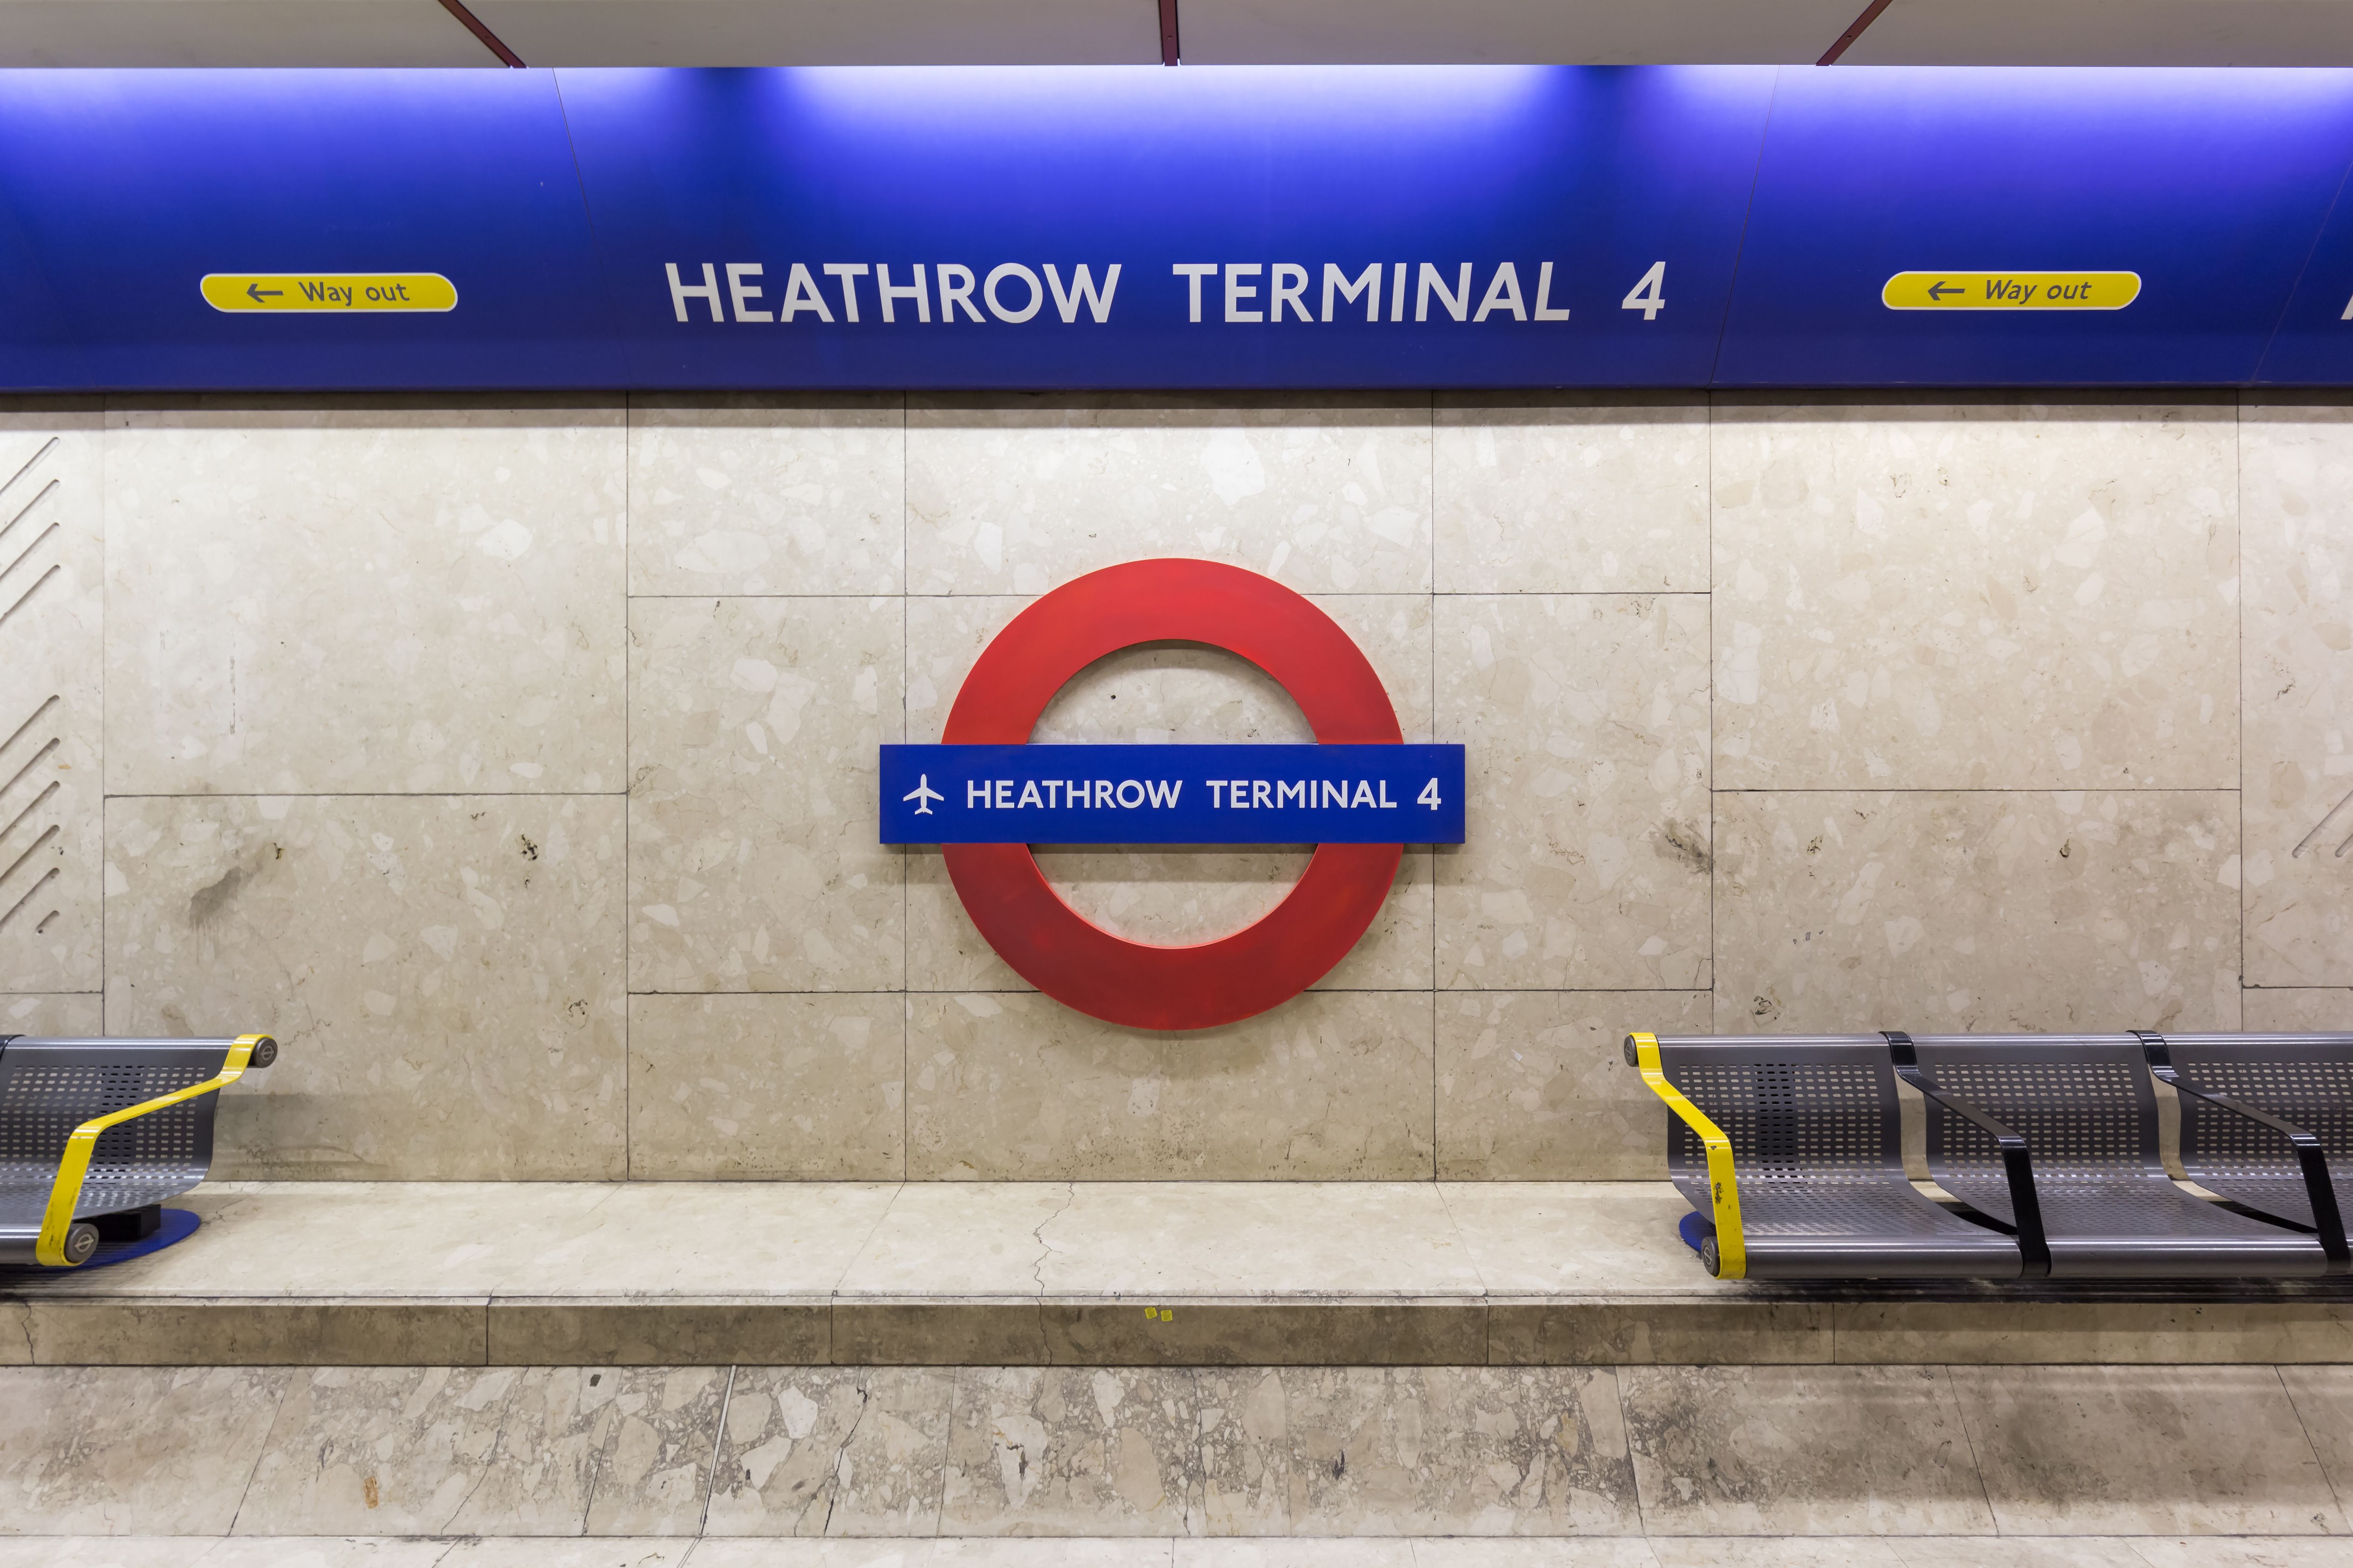 Heathrow Airport Terminal 4 Underground Station